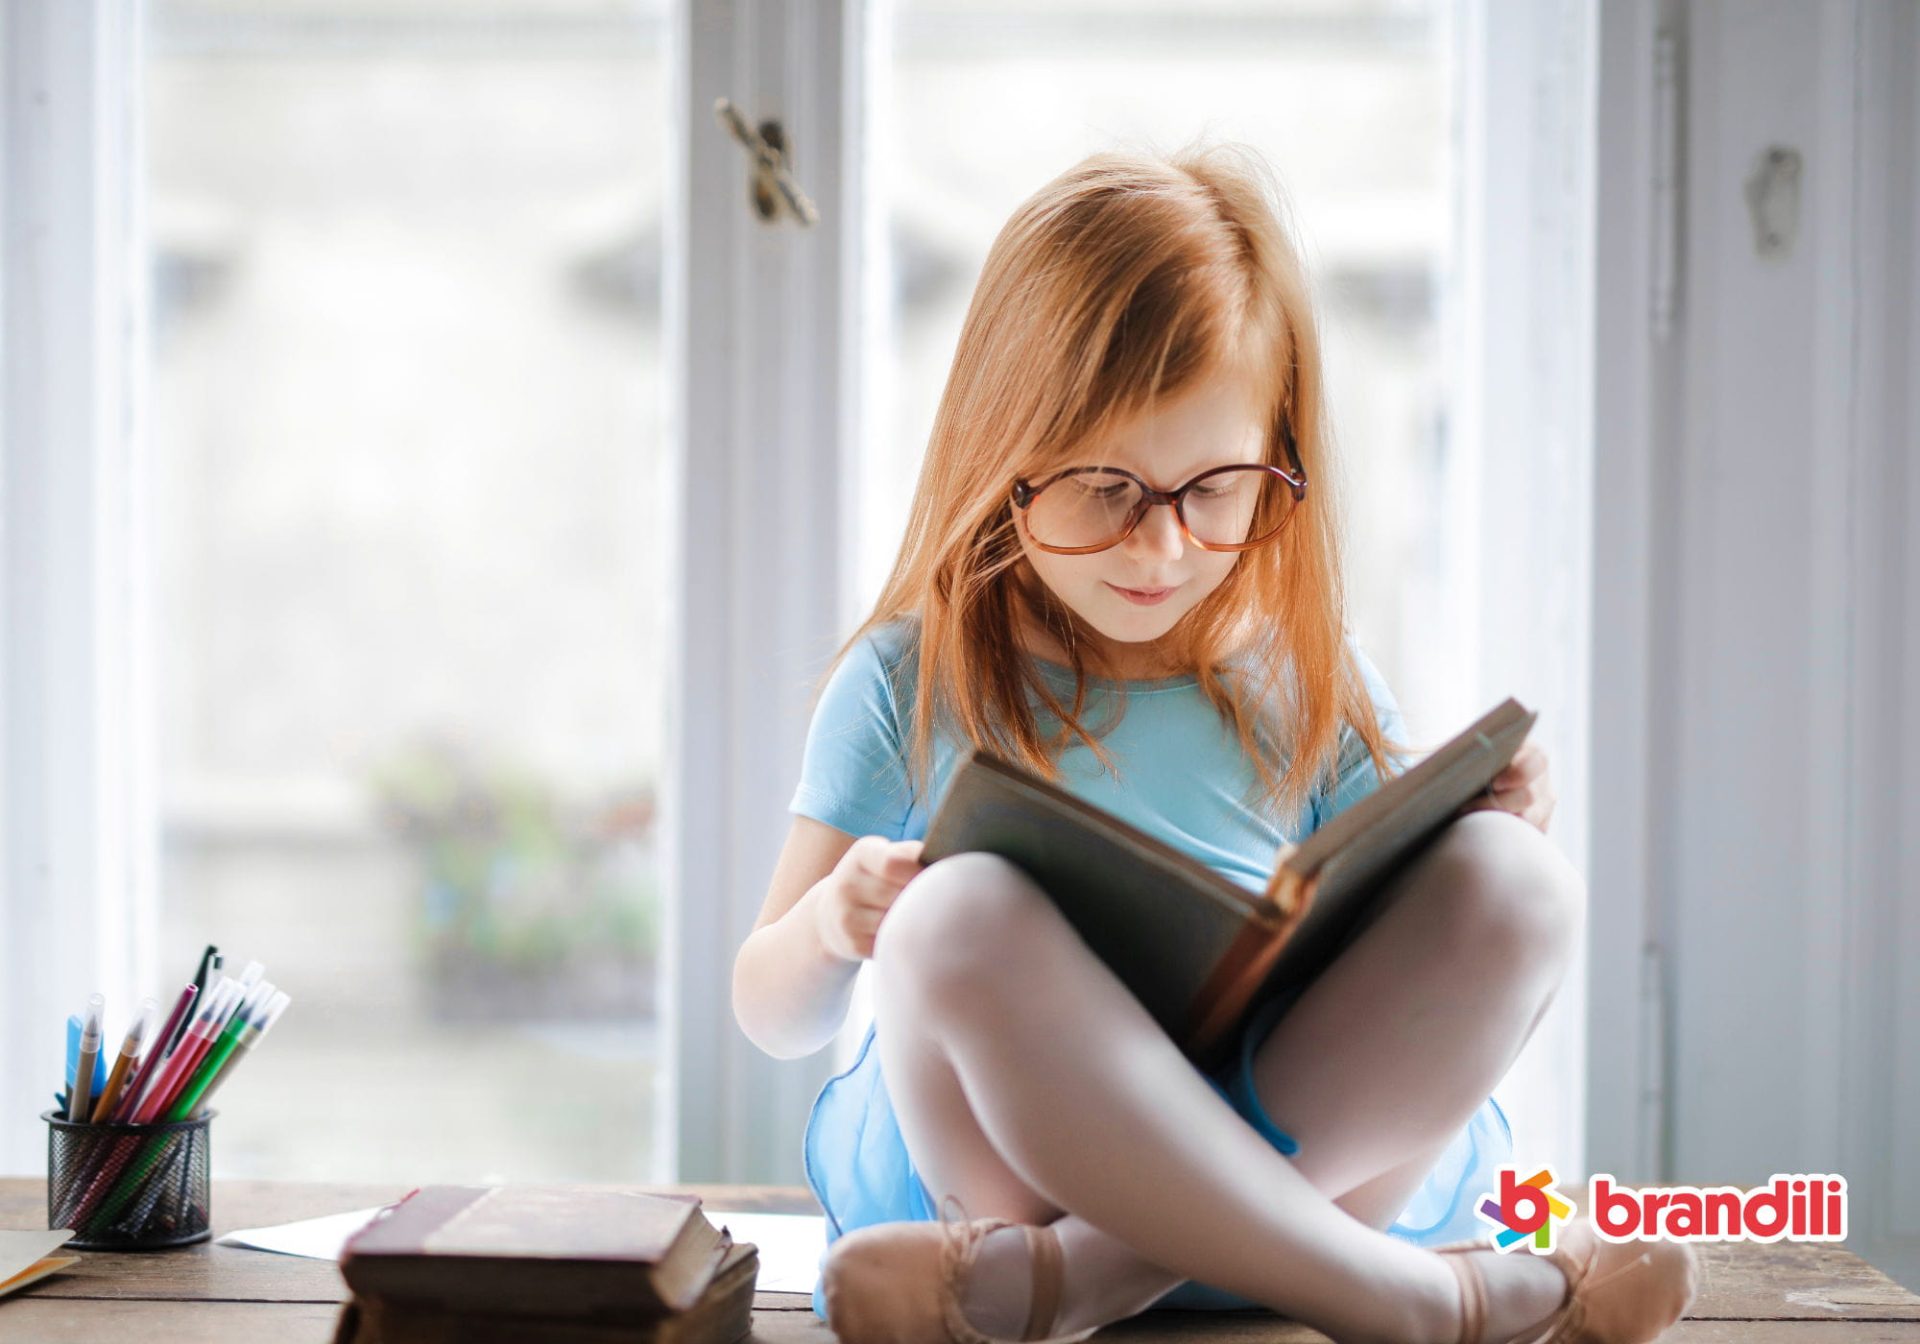 Criança de óculos sentada próxima à janela lendo um livro.